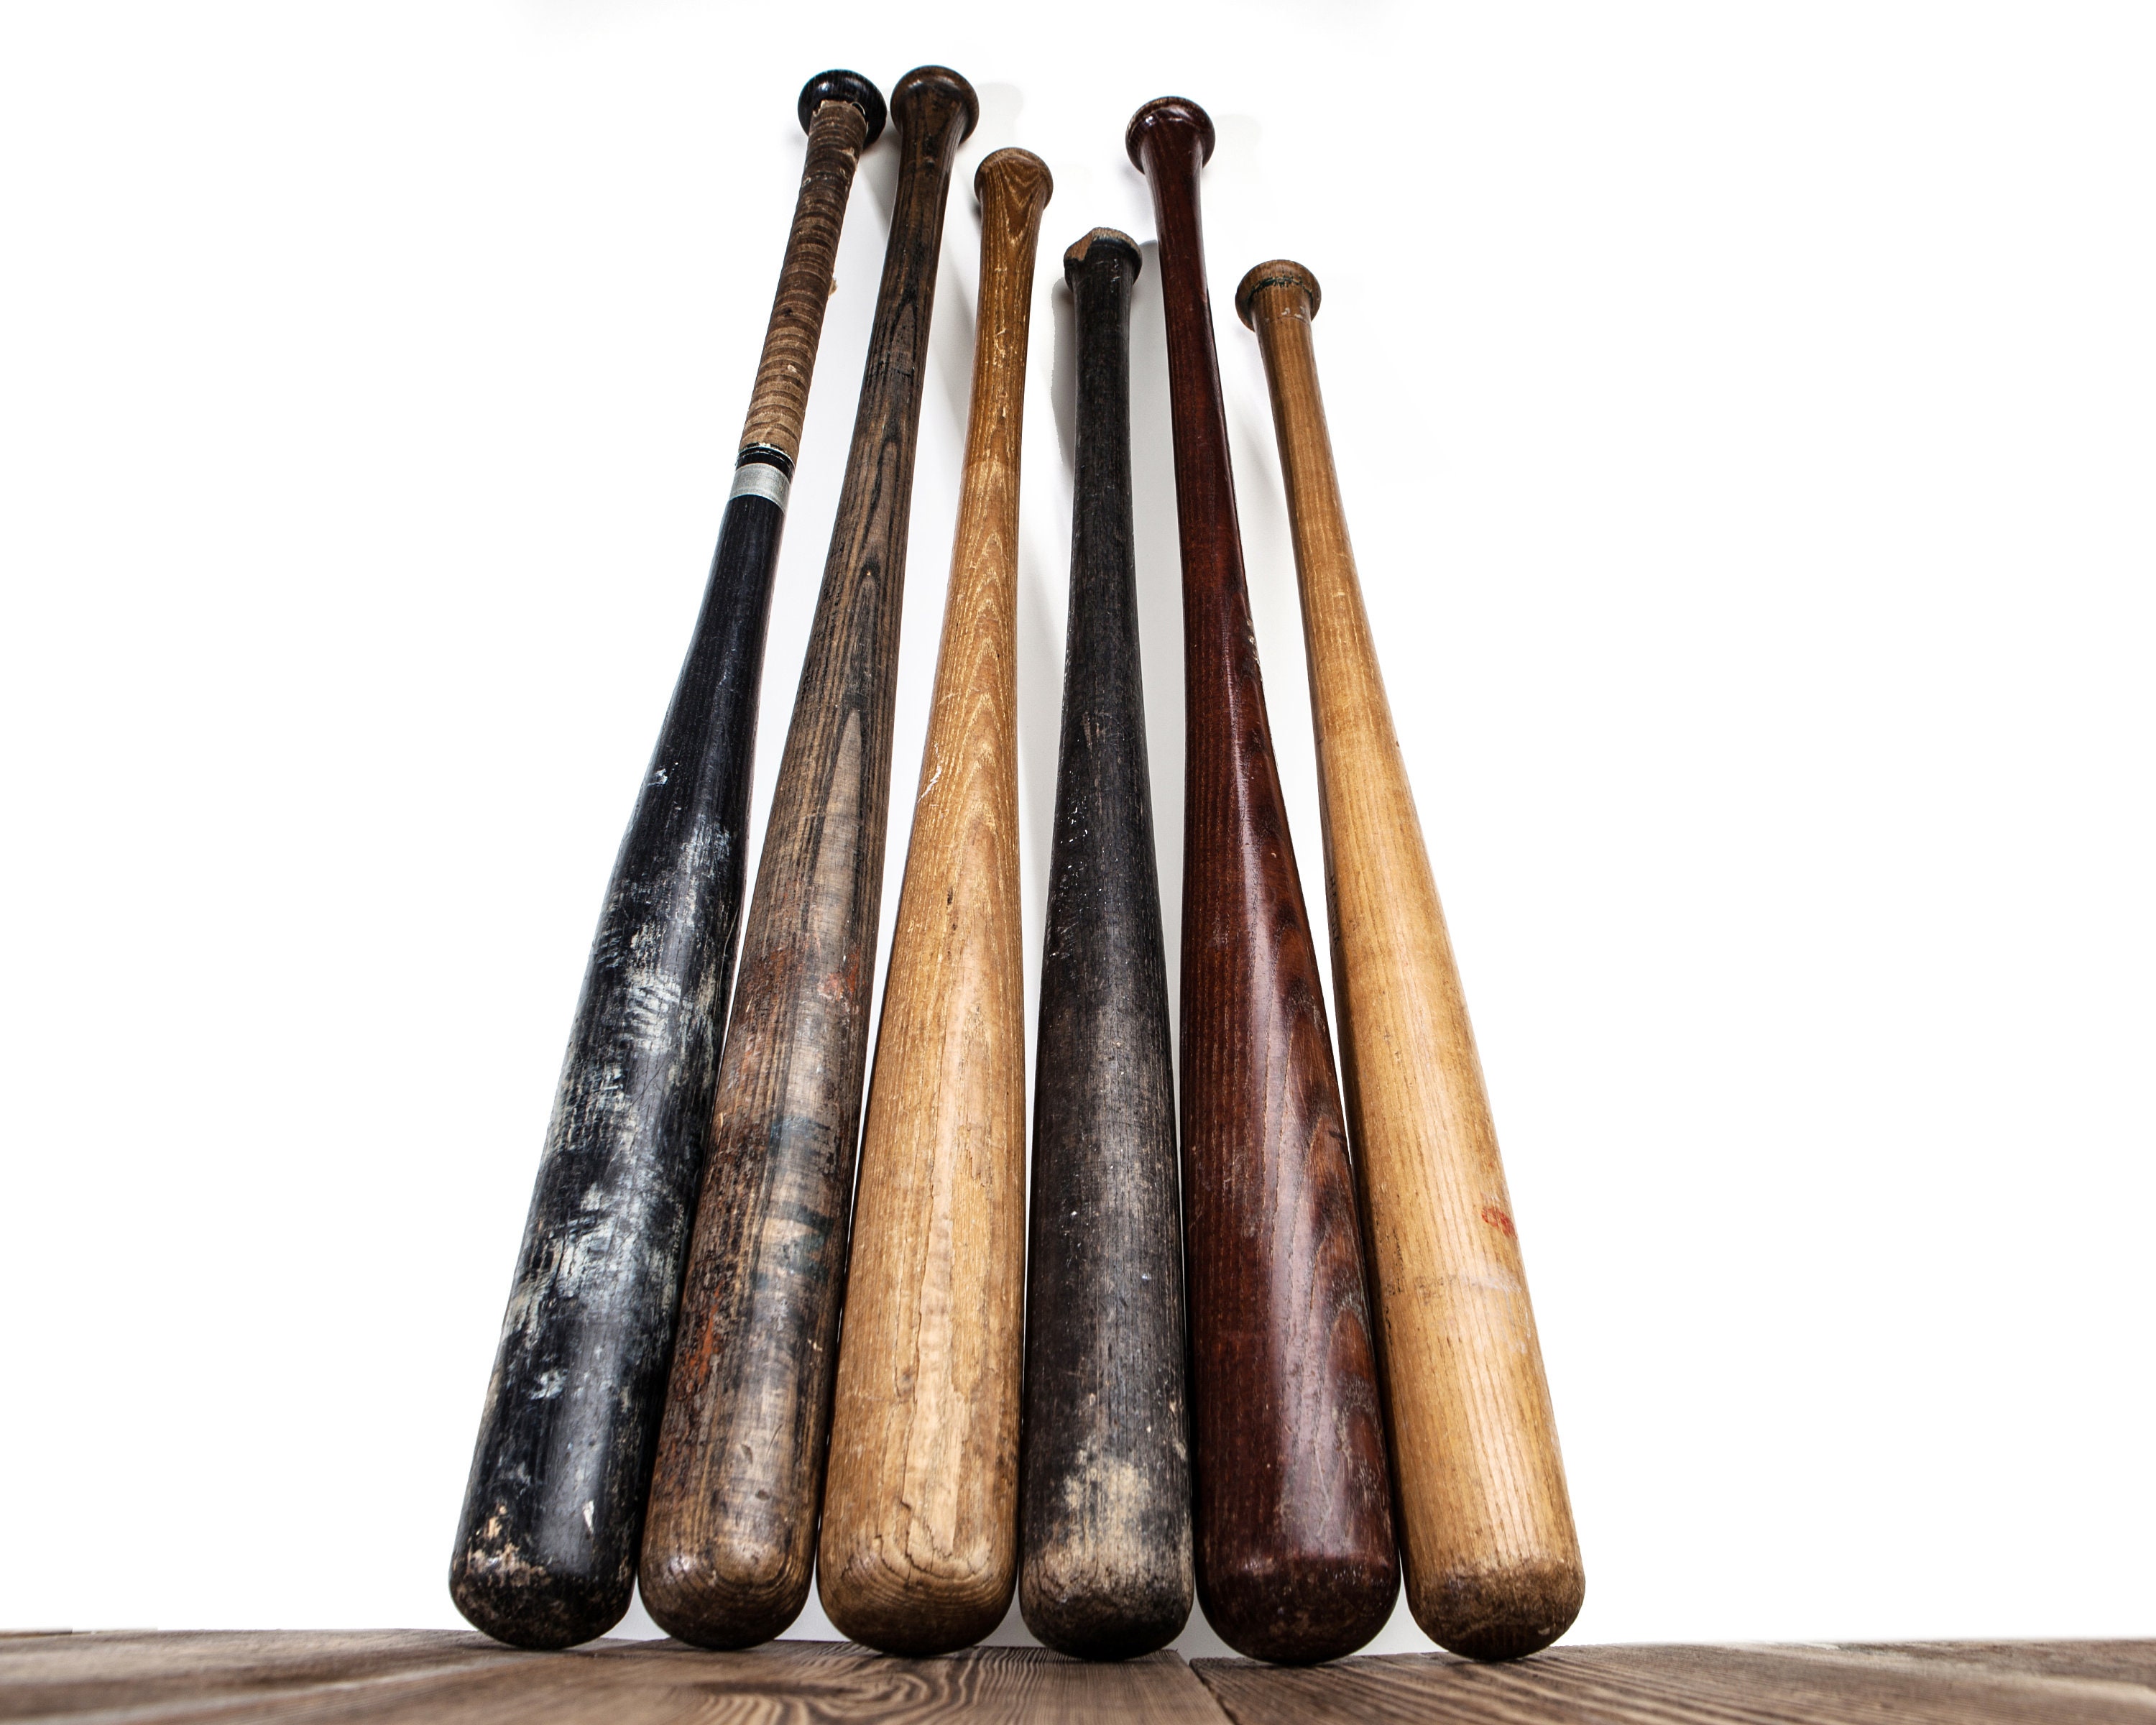 64 photos et images de Old Wooden Baseball Bat - Getty Images